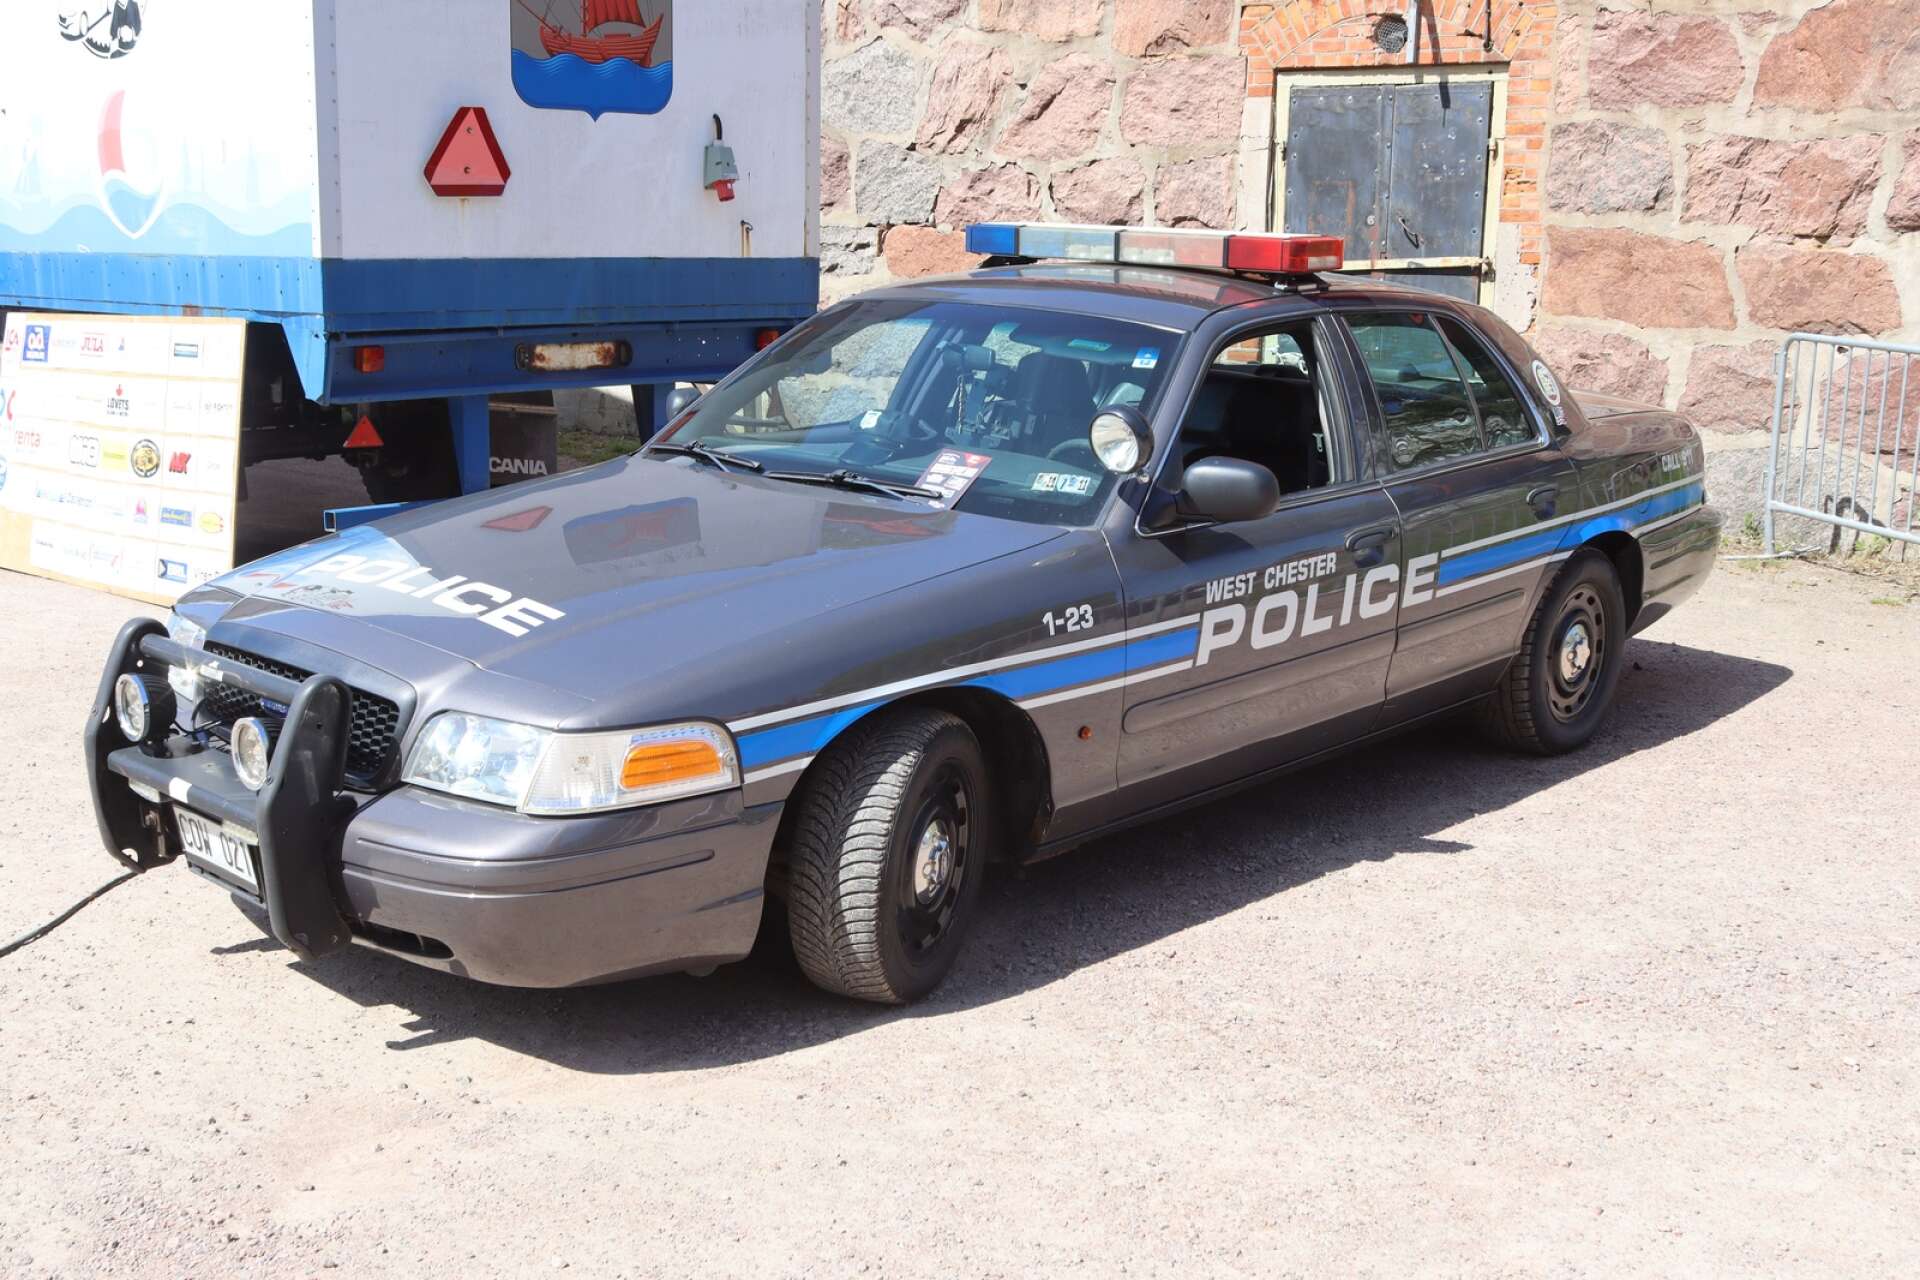 Ett av de mer udda inslagen i utställningen var en amerikansk polisbil.